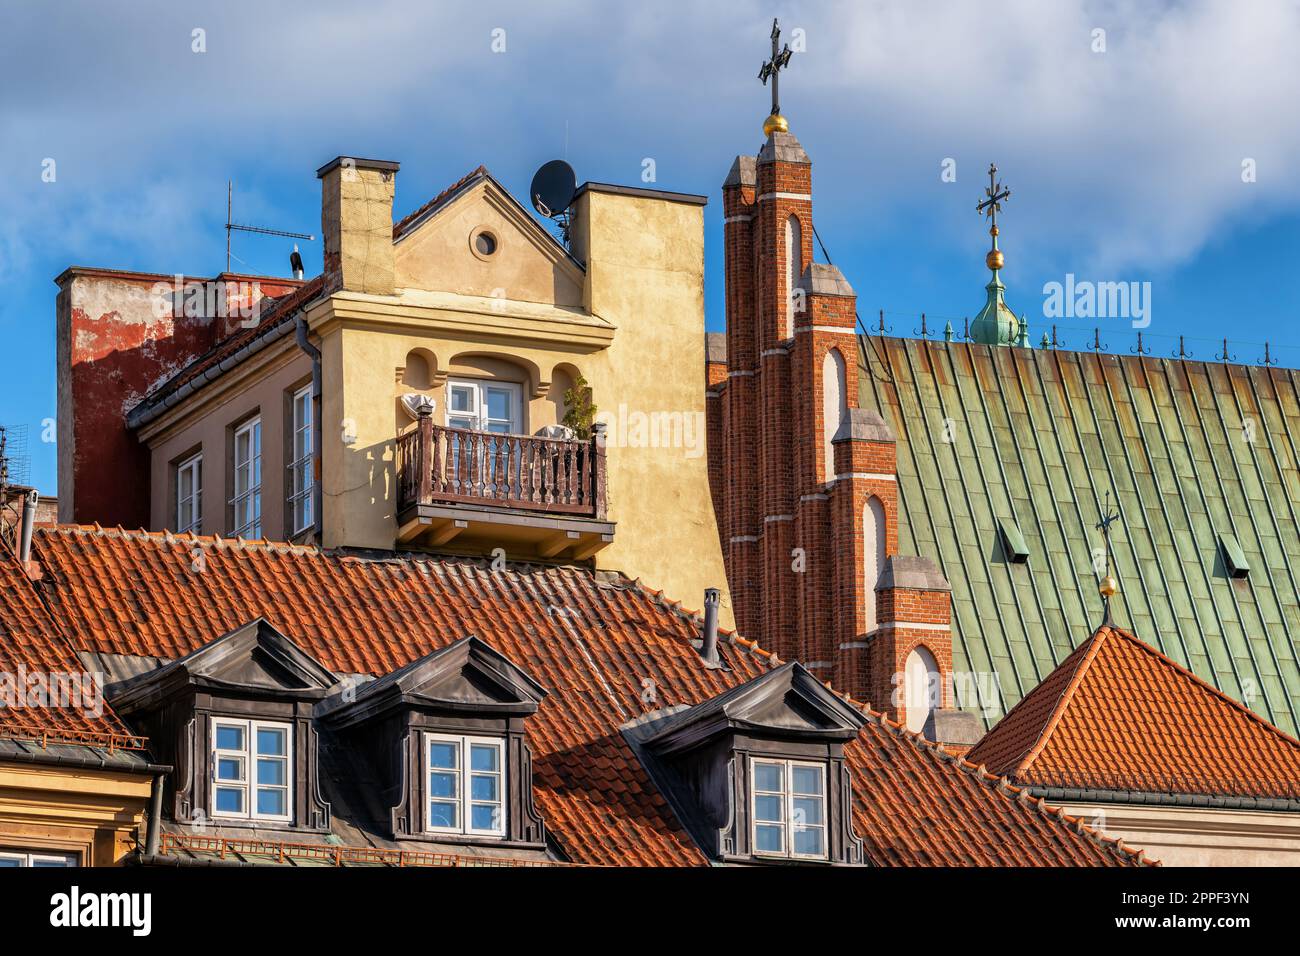 Historische Architektur der Altstadt in Warschau, Polen. Im Mietshaus befindet sich ein Dach mit Dachfenstern und einem Dach der Erzkathedrale von St. John. Stockfoto